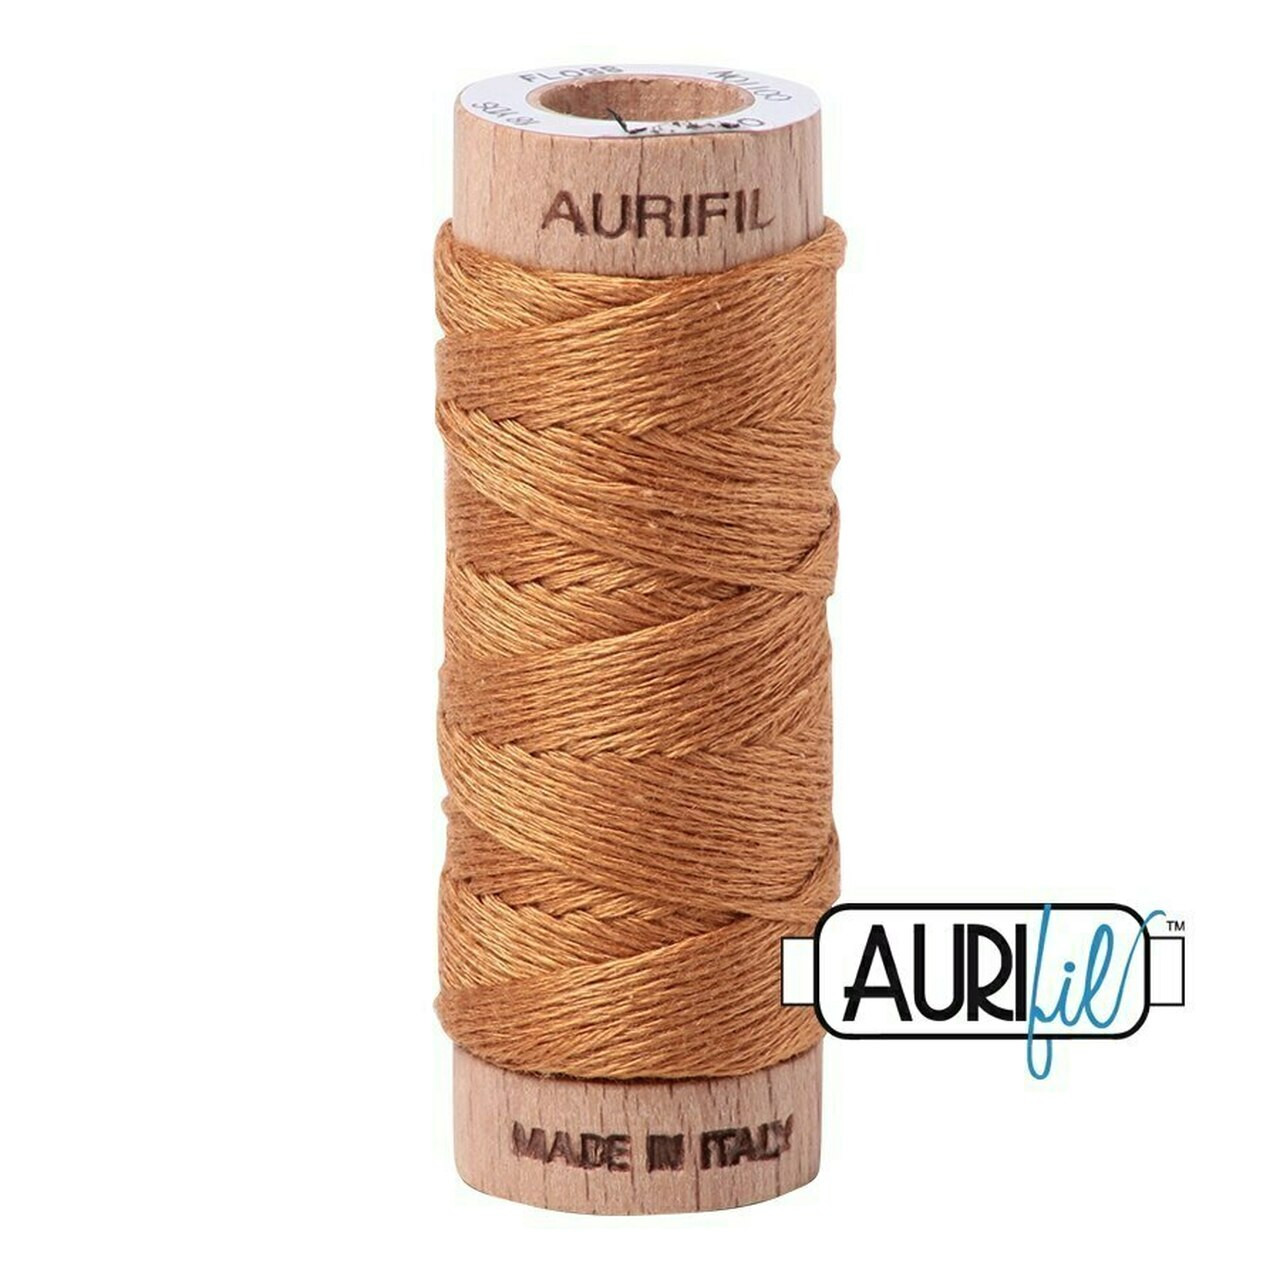 Aurifil 2930 - Golden Toast